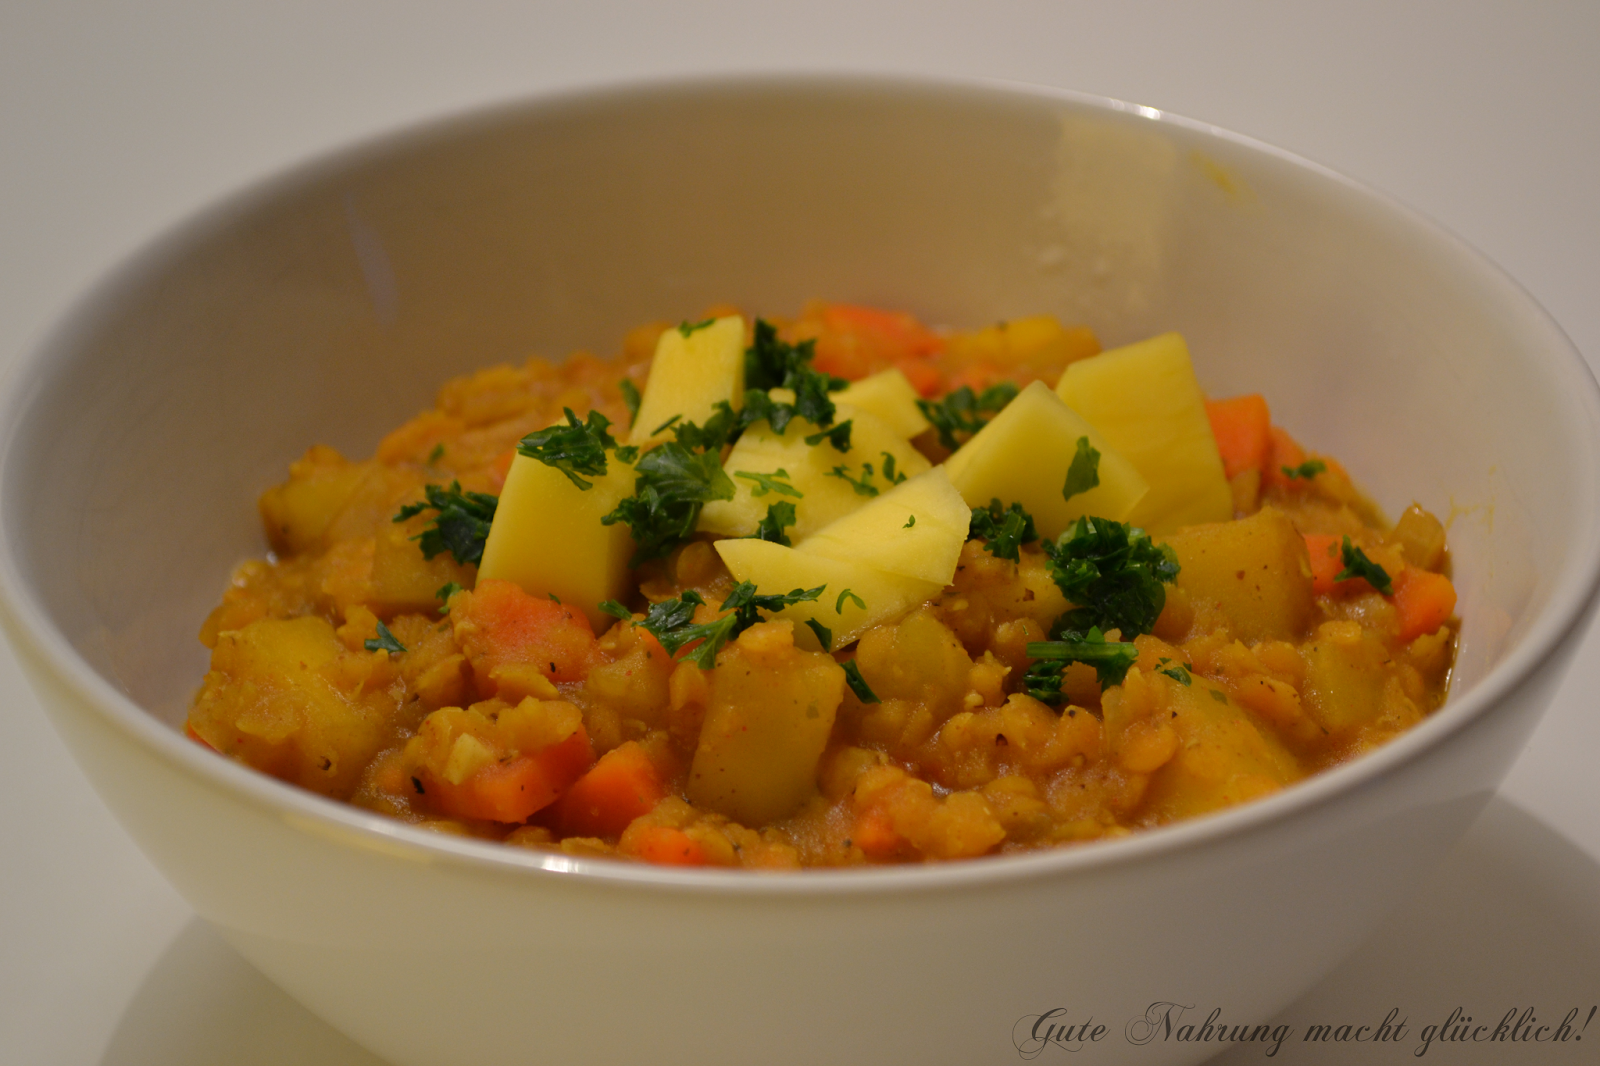 Gute Nahrung macht glücklich : Rote-Linsen-Curry mit Mango